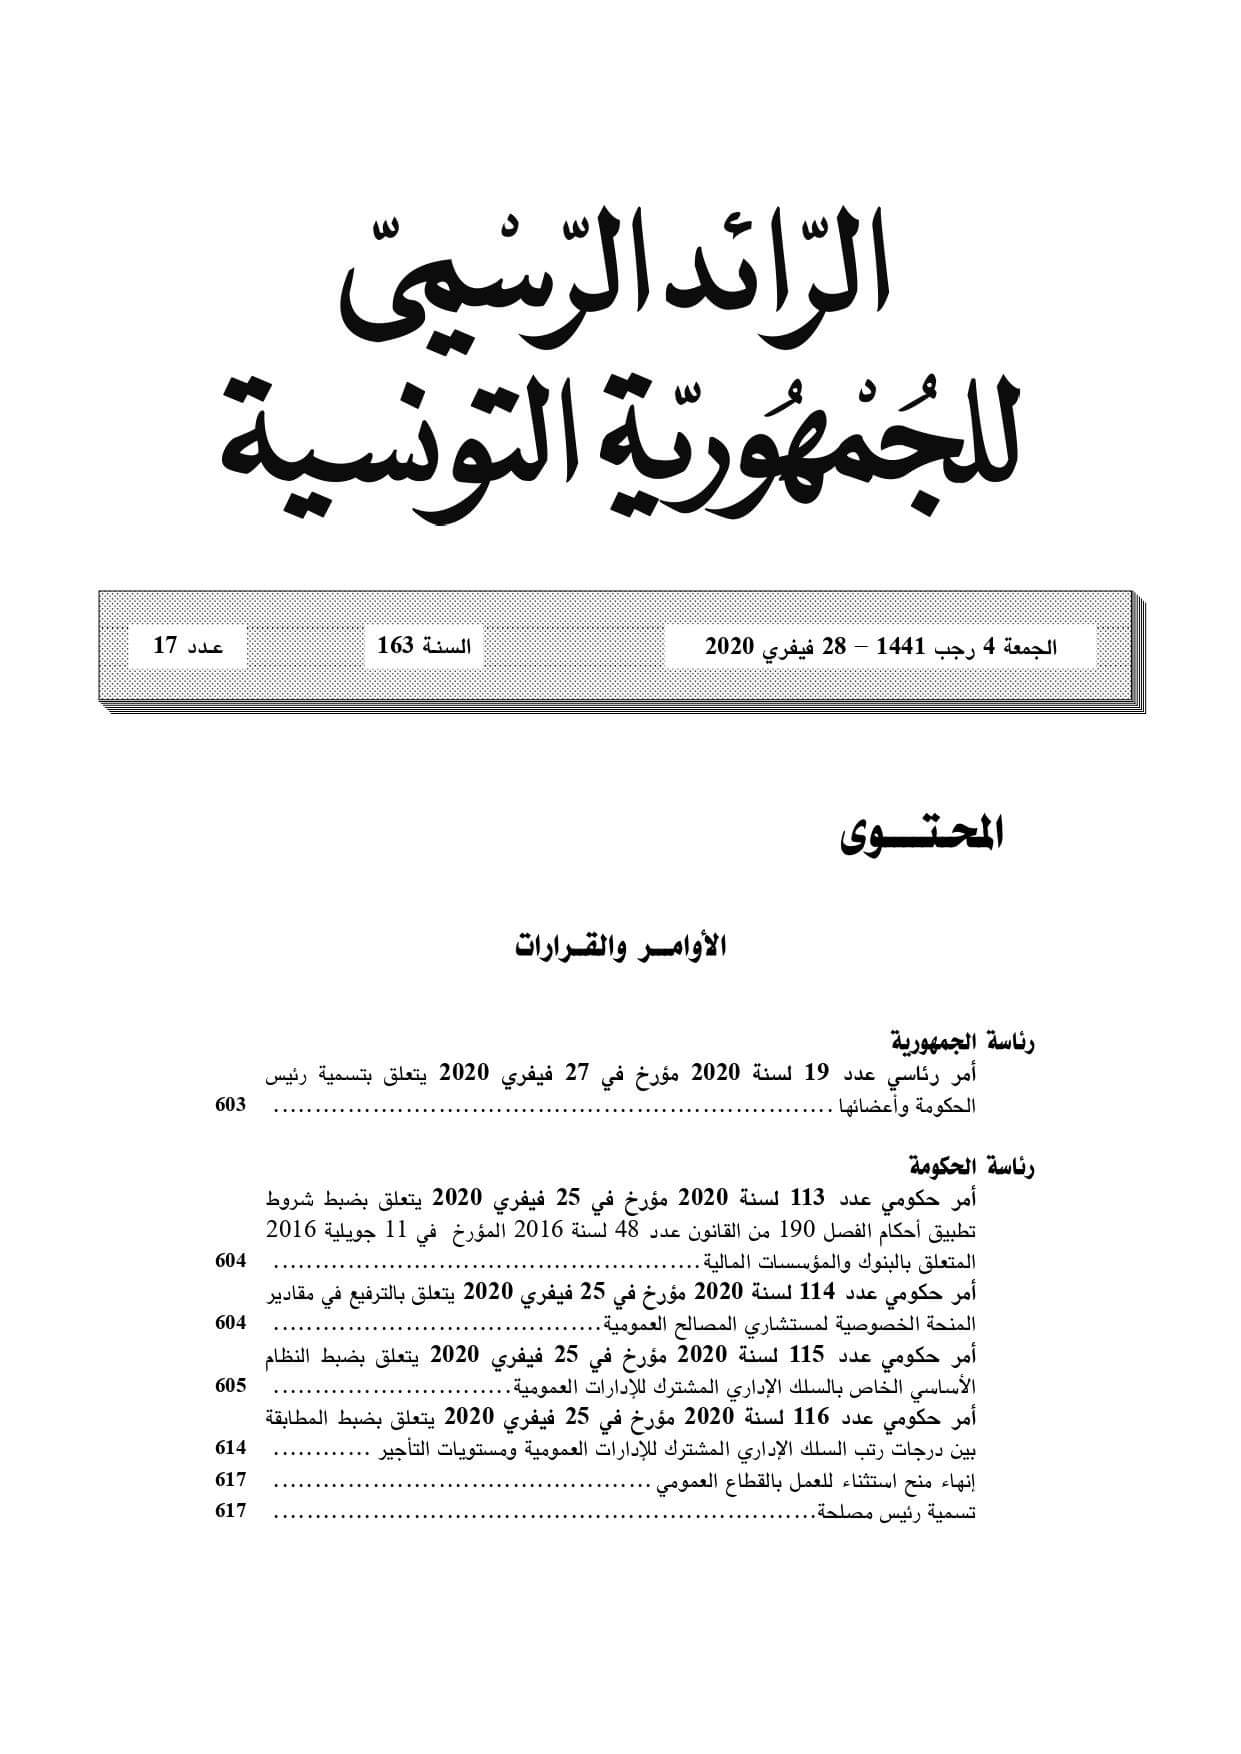 بيان - المطبعة الرسمية للجمهورية التونسية 03/03/2020 (صور)